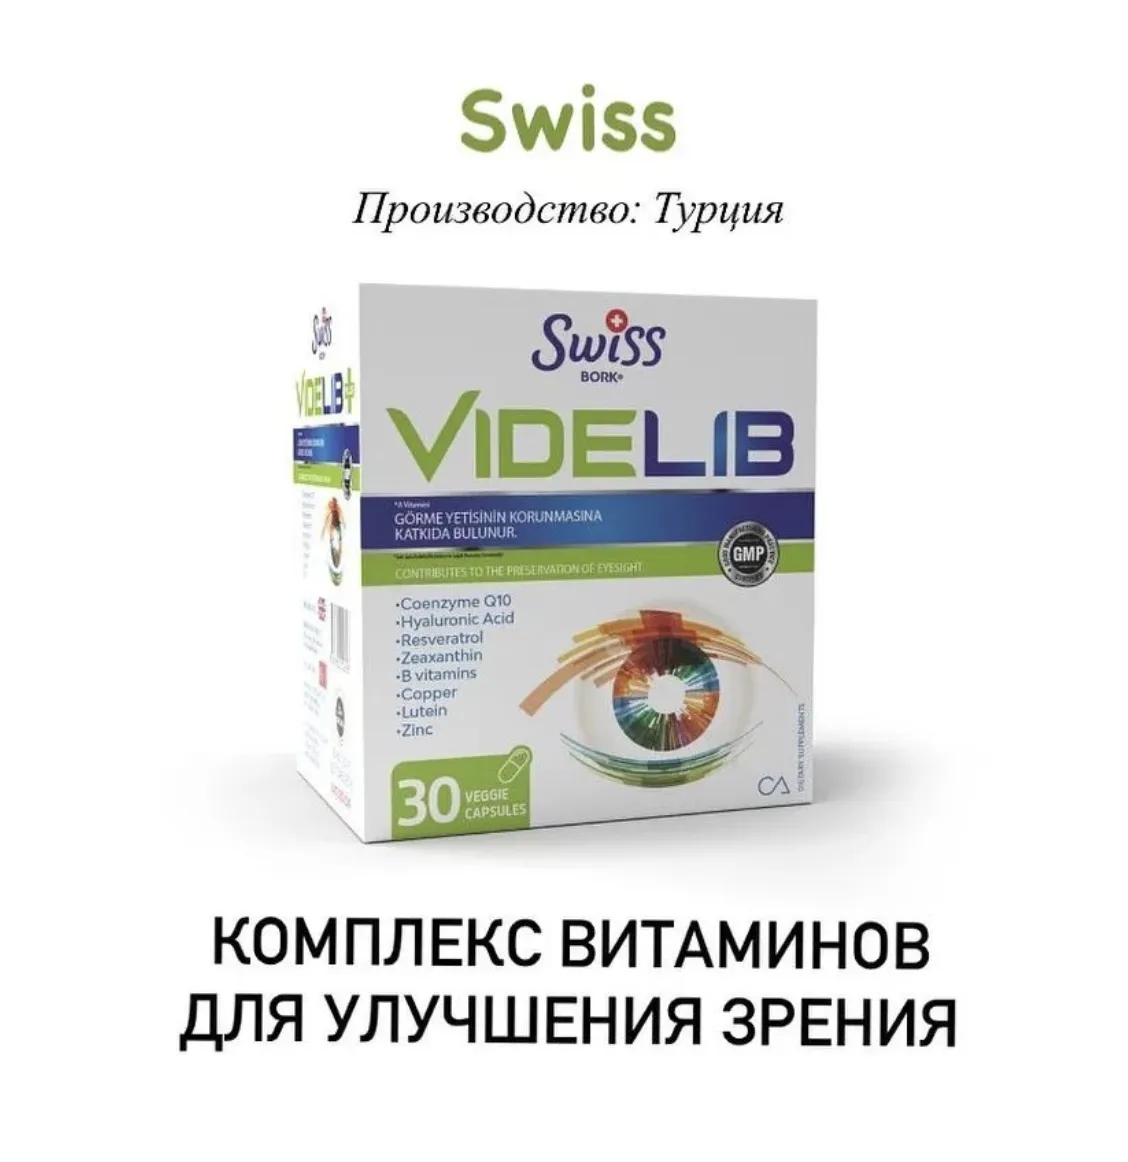 Комплекс витаминов для здоровья глаз и сохранения зрения Swiss bork Videlib#1